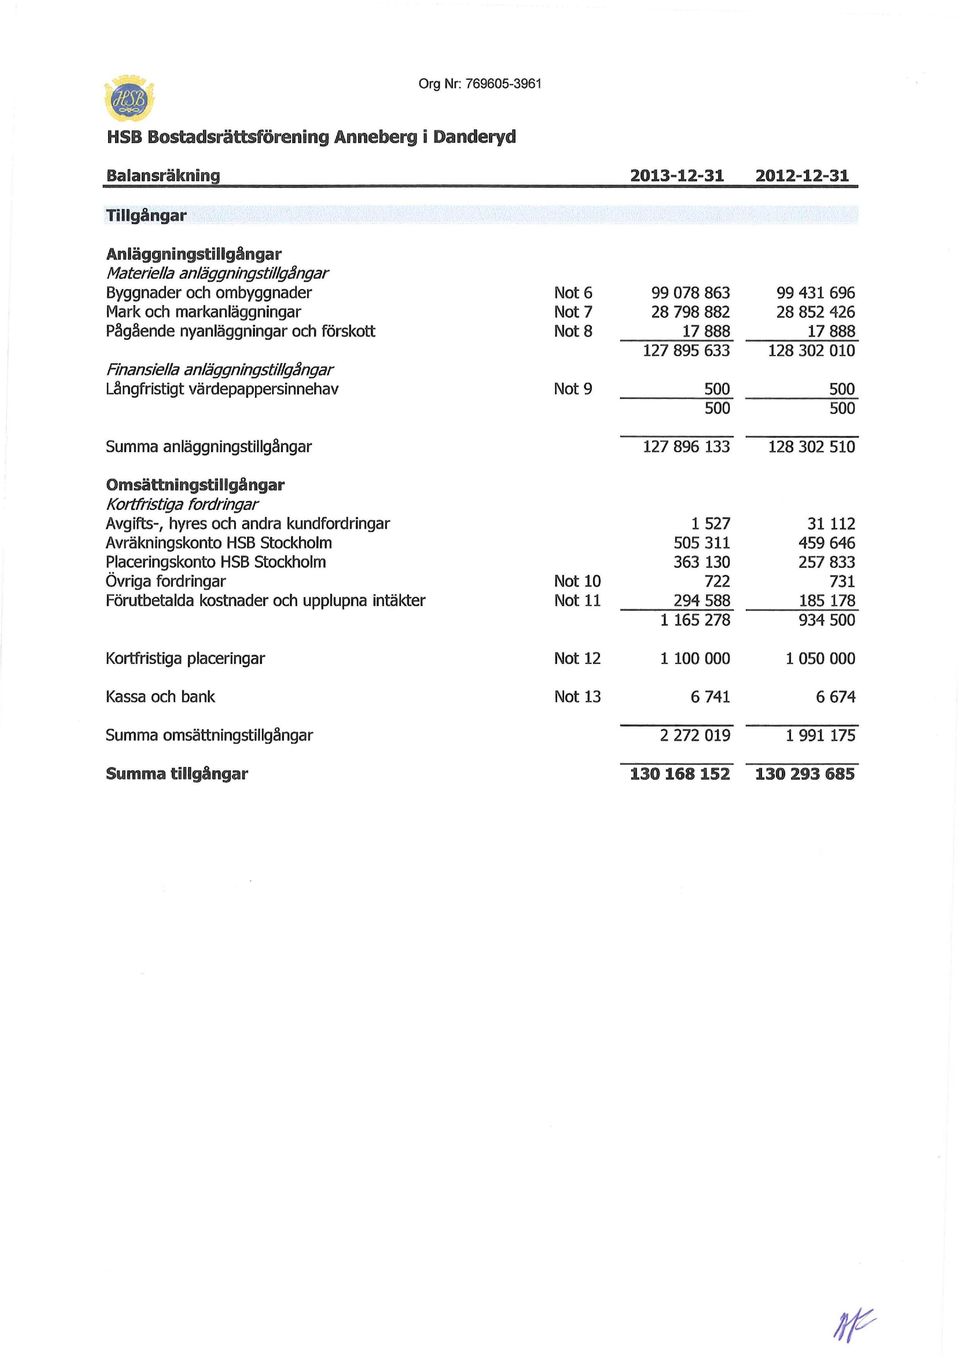 Avgifts-, hyres och andra kundfordringar Avräkningskonto HSB Stockholm Placeringskonto HSB Stockholm Övriga fordringar Förutbetalda kostnader och upplupna intäkter Kortfristiga placeringar Kassa och